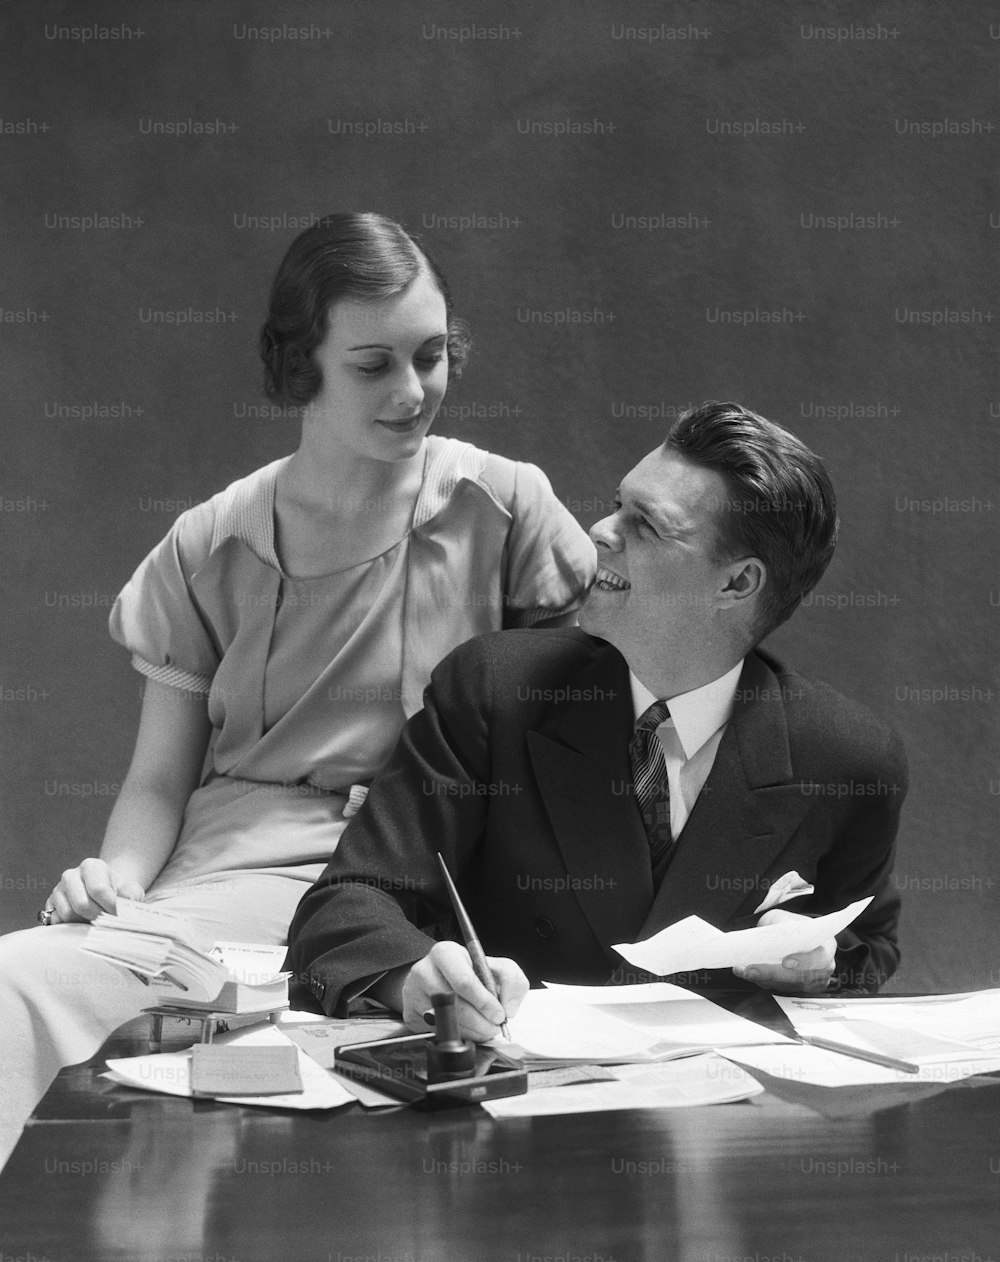 ÉTATS-UNIS - Vers les années 1930 : Couple assis à un bureau, homme regardant une femme assise sur le bras de la chaise.